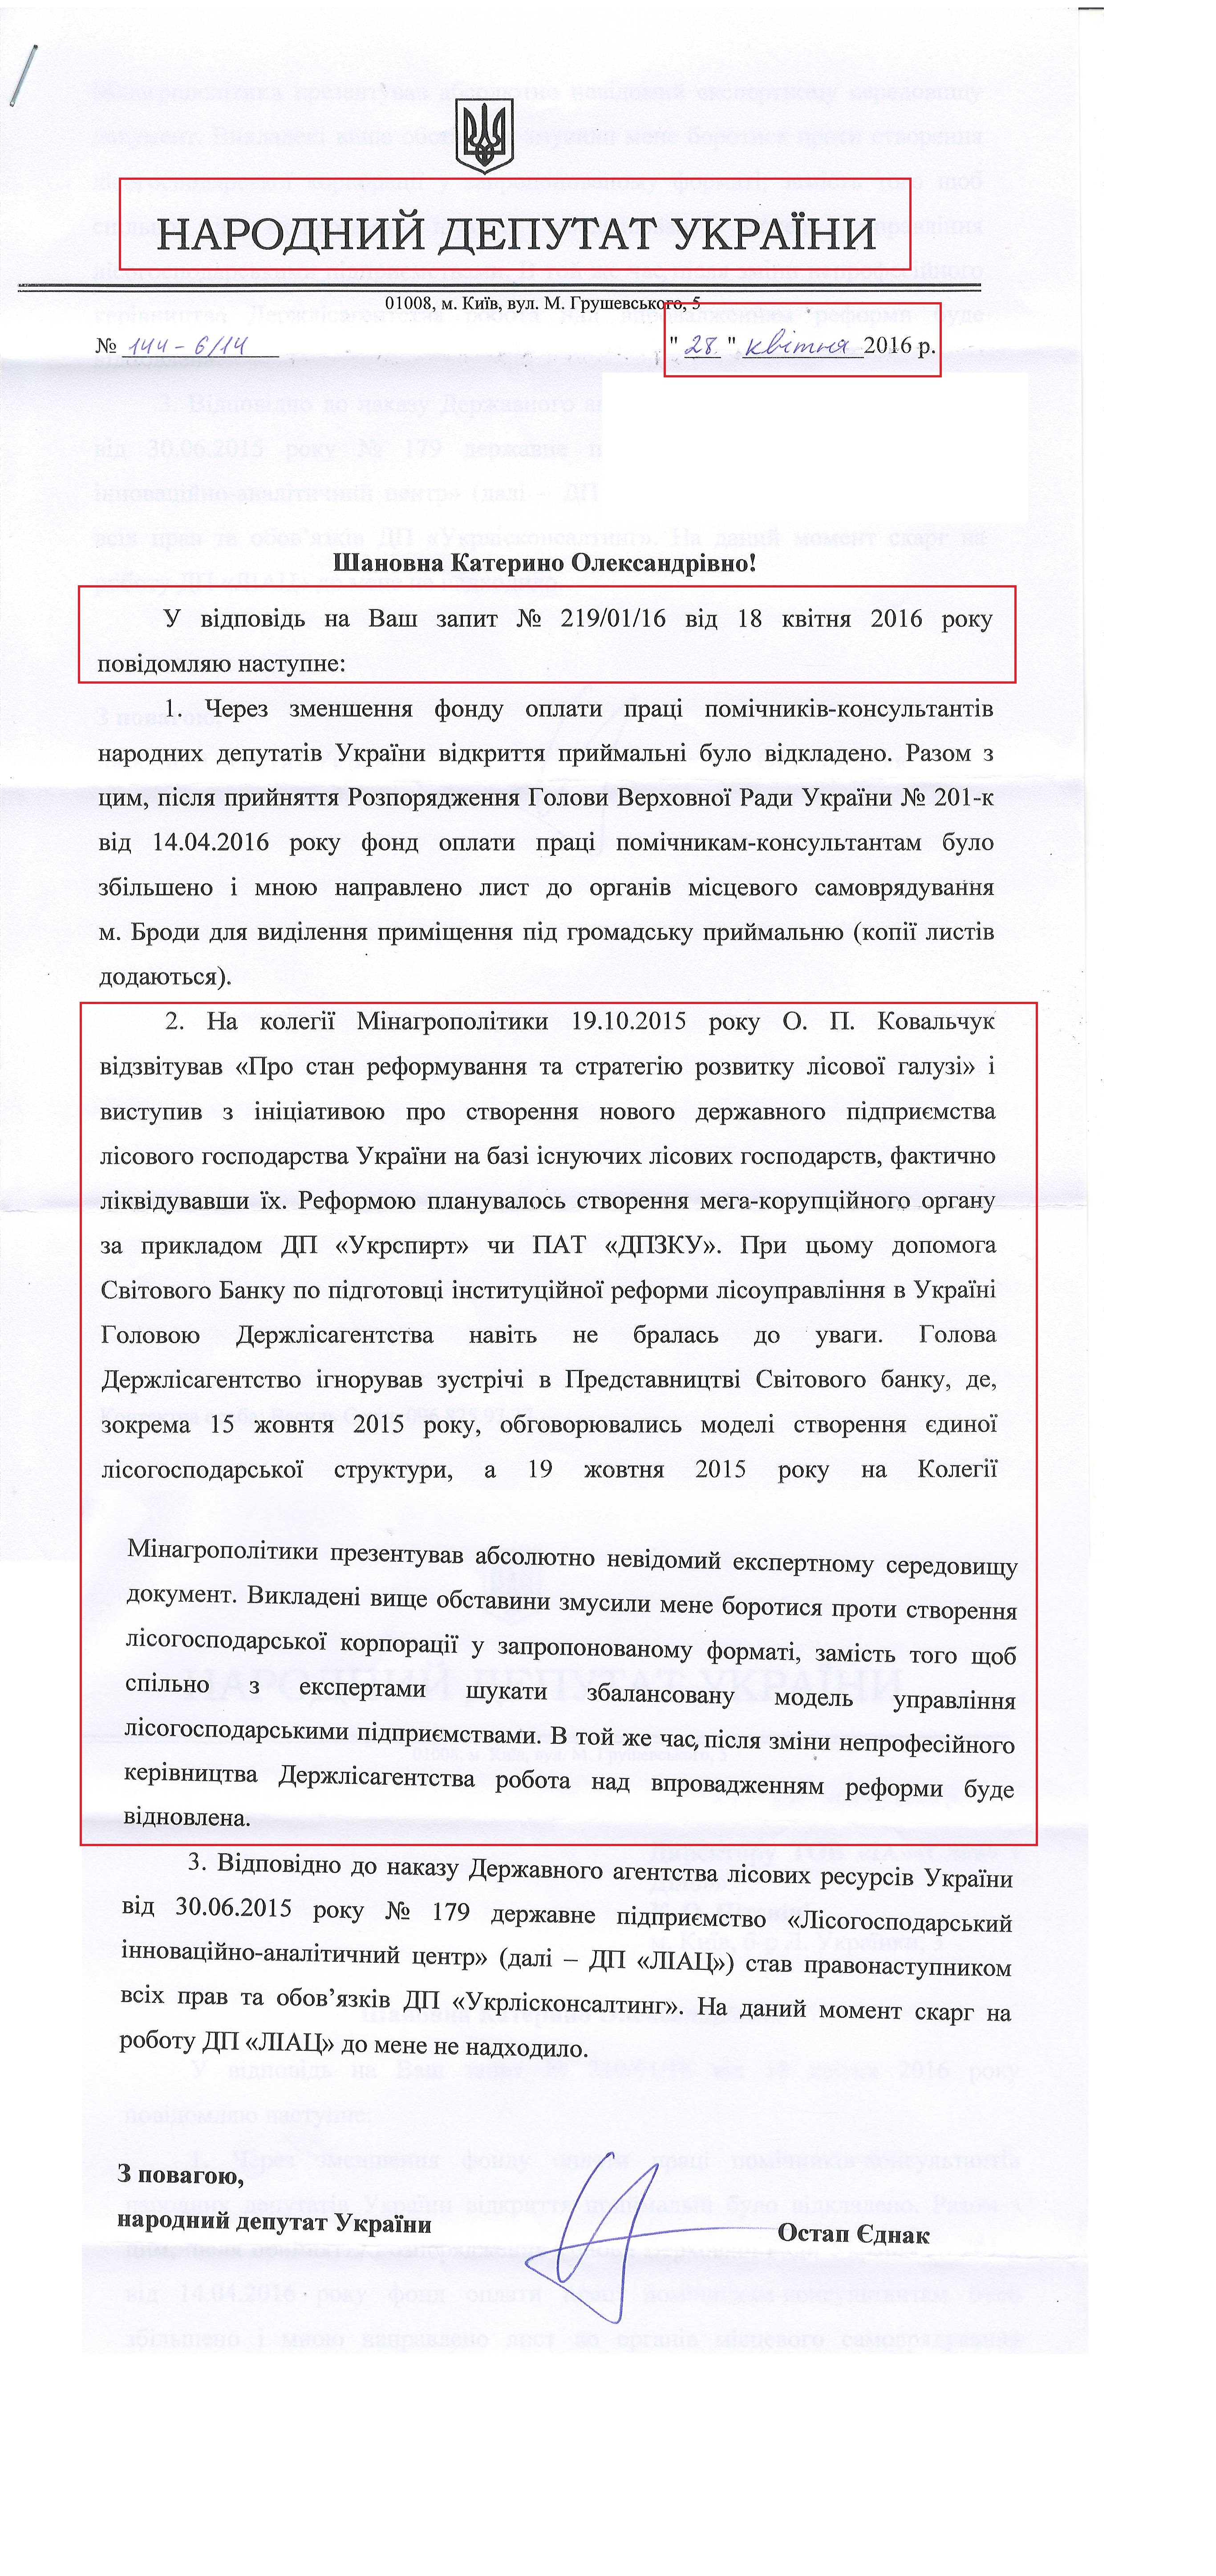 лист народного депутатв